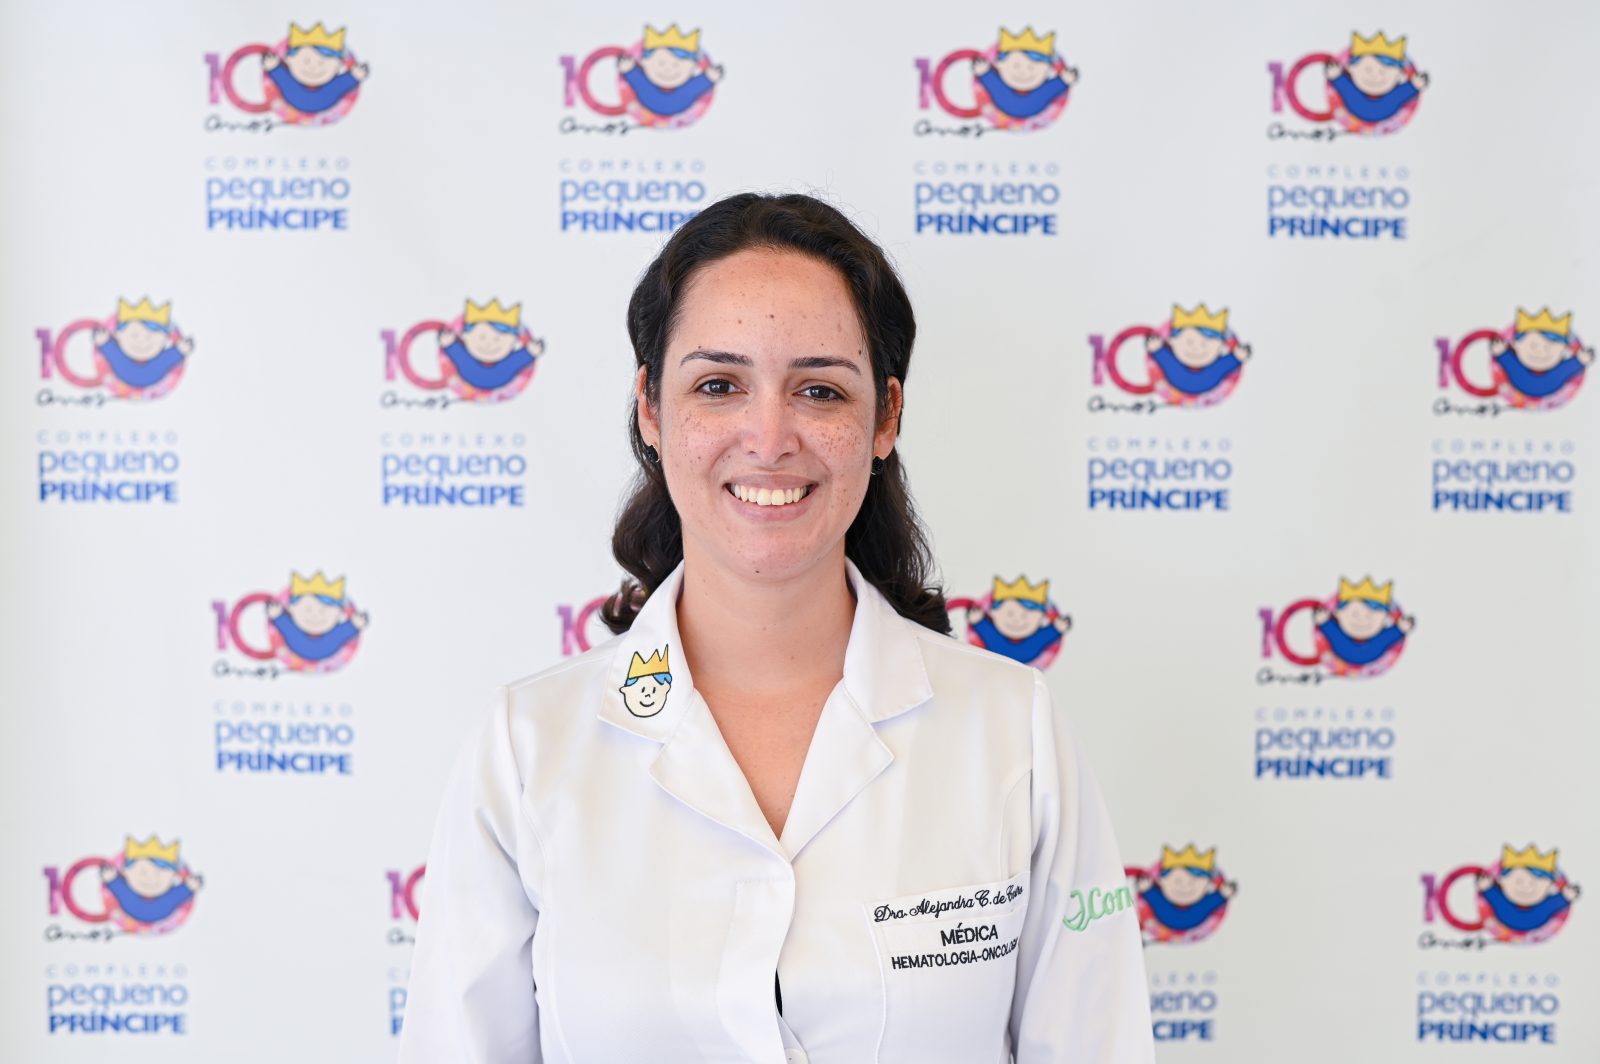 Dra. Alejandra Adriana Cardoso de Castro